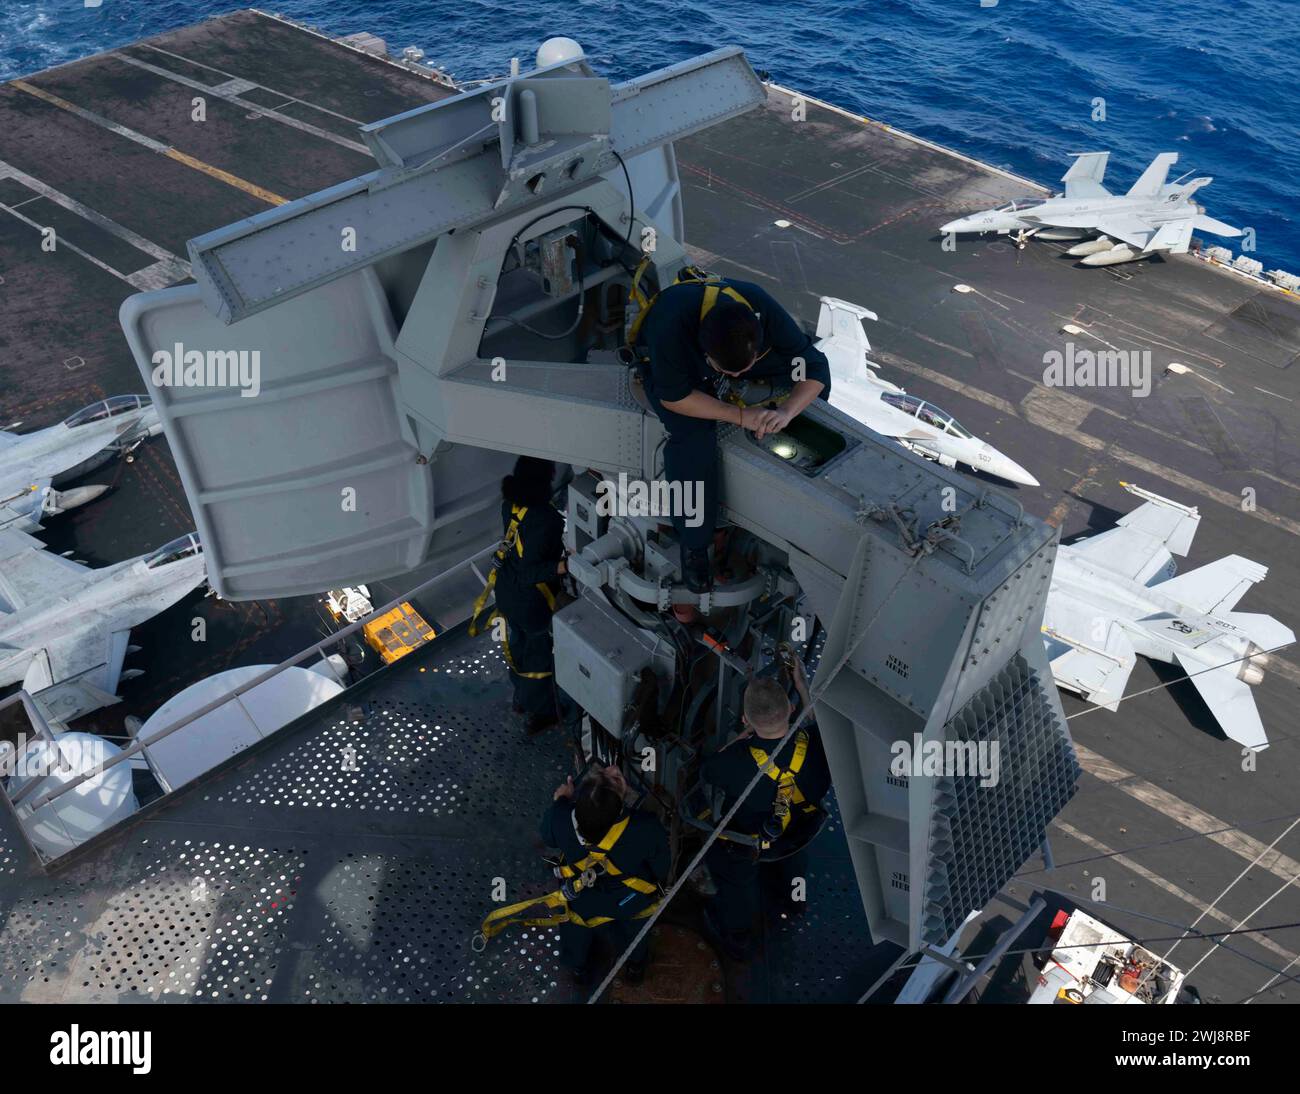 240203-N-PQ495-1035 PHILIPPINE SEA (3 febbraio 2024) i marinai eseguono la manutenzione dell'anthe AN/SPN-43 Marshal radar sull'albero della portaerei classe Nimitz USS Carl Vinson (CVN 70). Vinson, nave ammiraglia del Carrier Strike Group ONE, è dispiegata nell'area delle operazioni della 7th Fleet degli Stati Uniti a supporto di un Indo-Pacifico libero e aperto. (Foto della Marina degli Stati Uniti di Larissa T. Dougherty, specialista della comunicazione di massa di seconda classe) Foto Stock